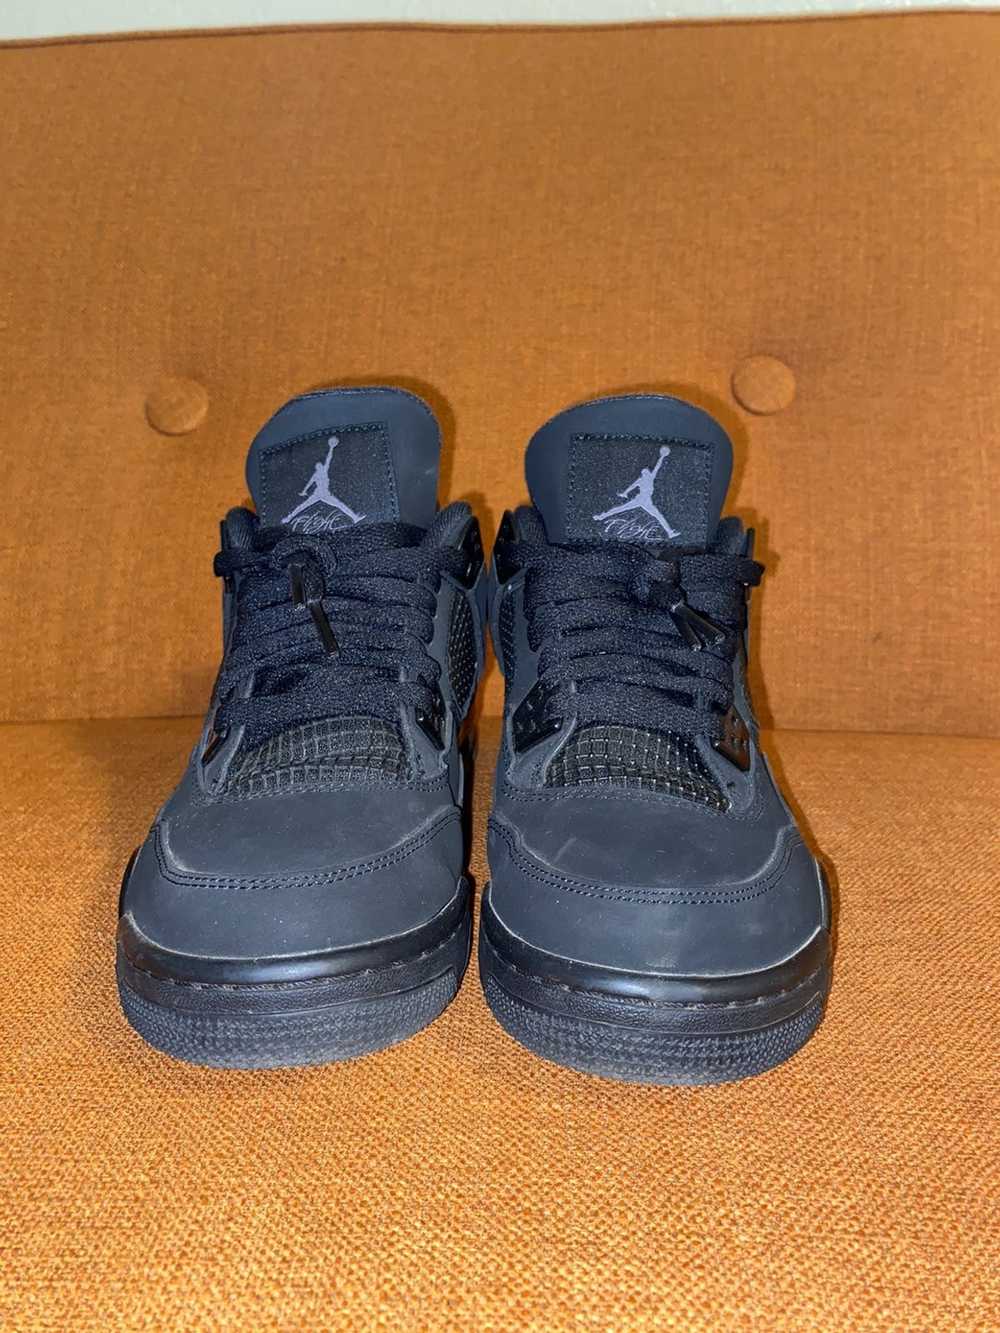 Jordan Brand All black Jordan 4’s - image 4